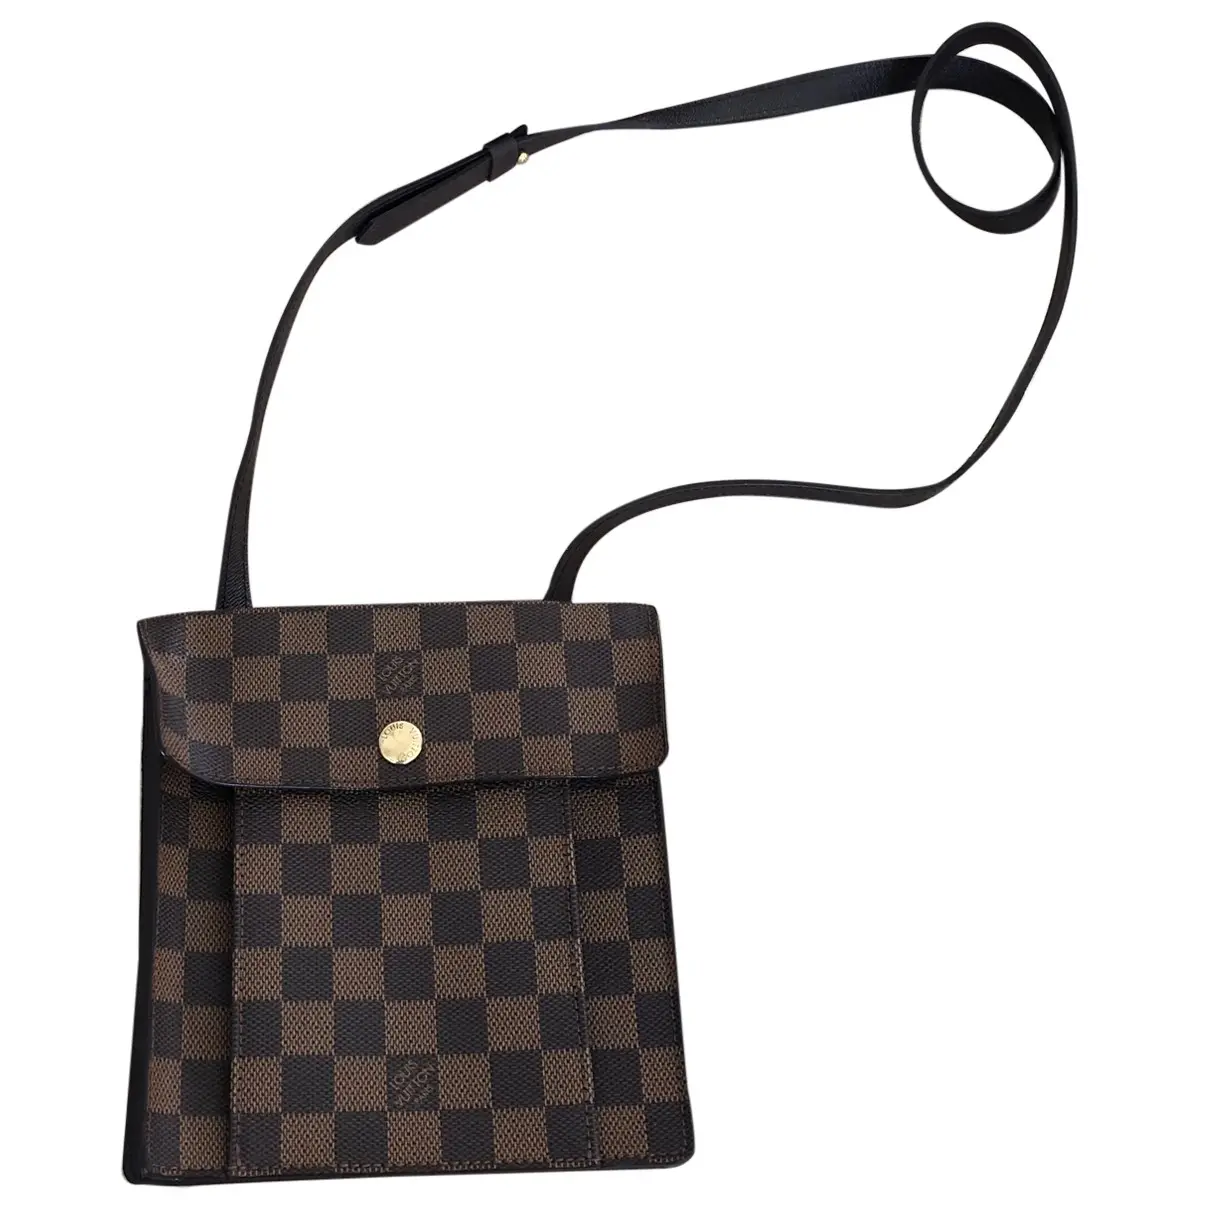 Pimlico cloth handbag Louis Vuitton - Vintage